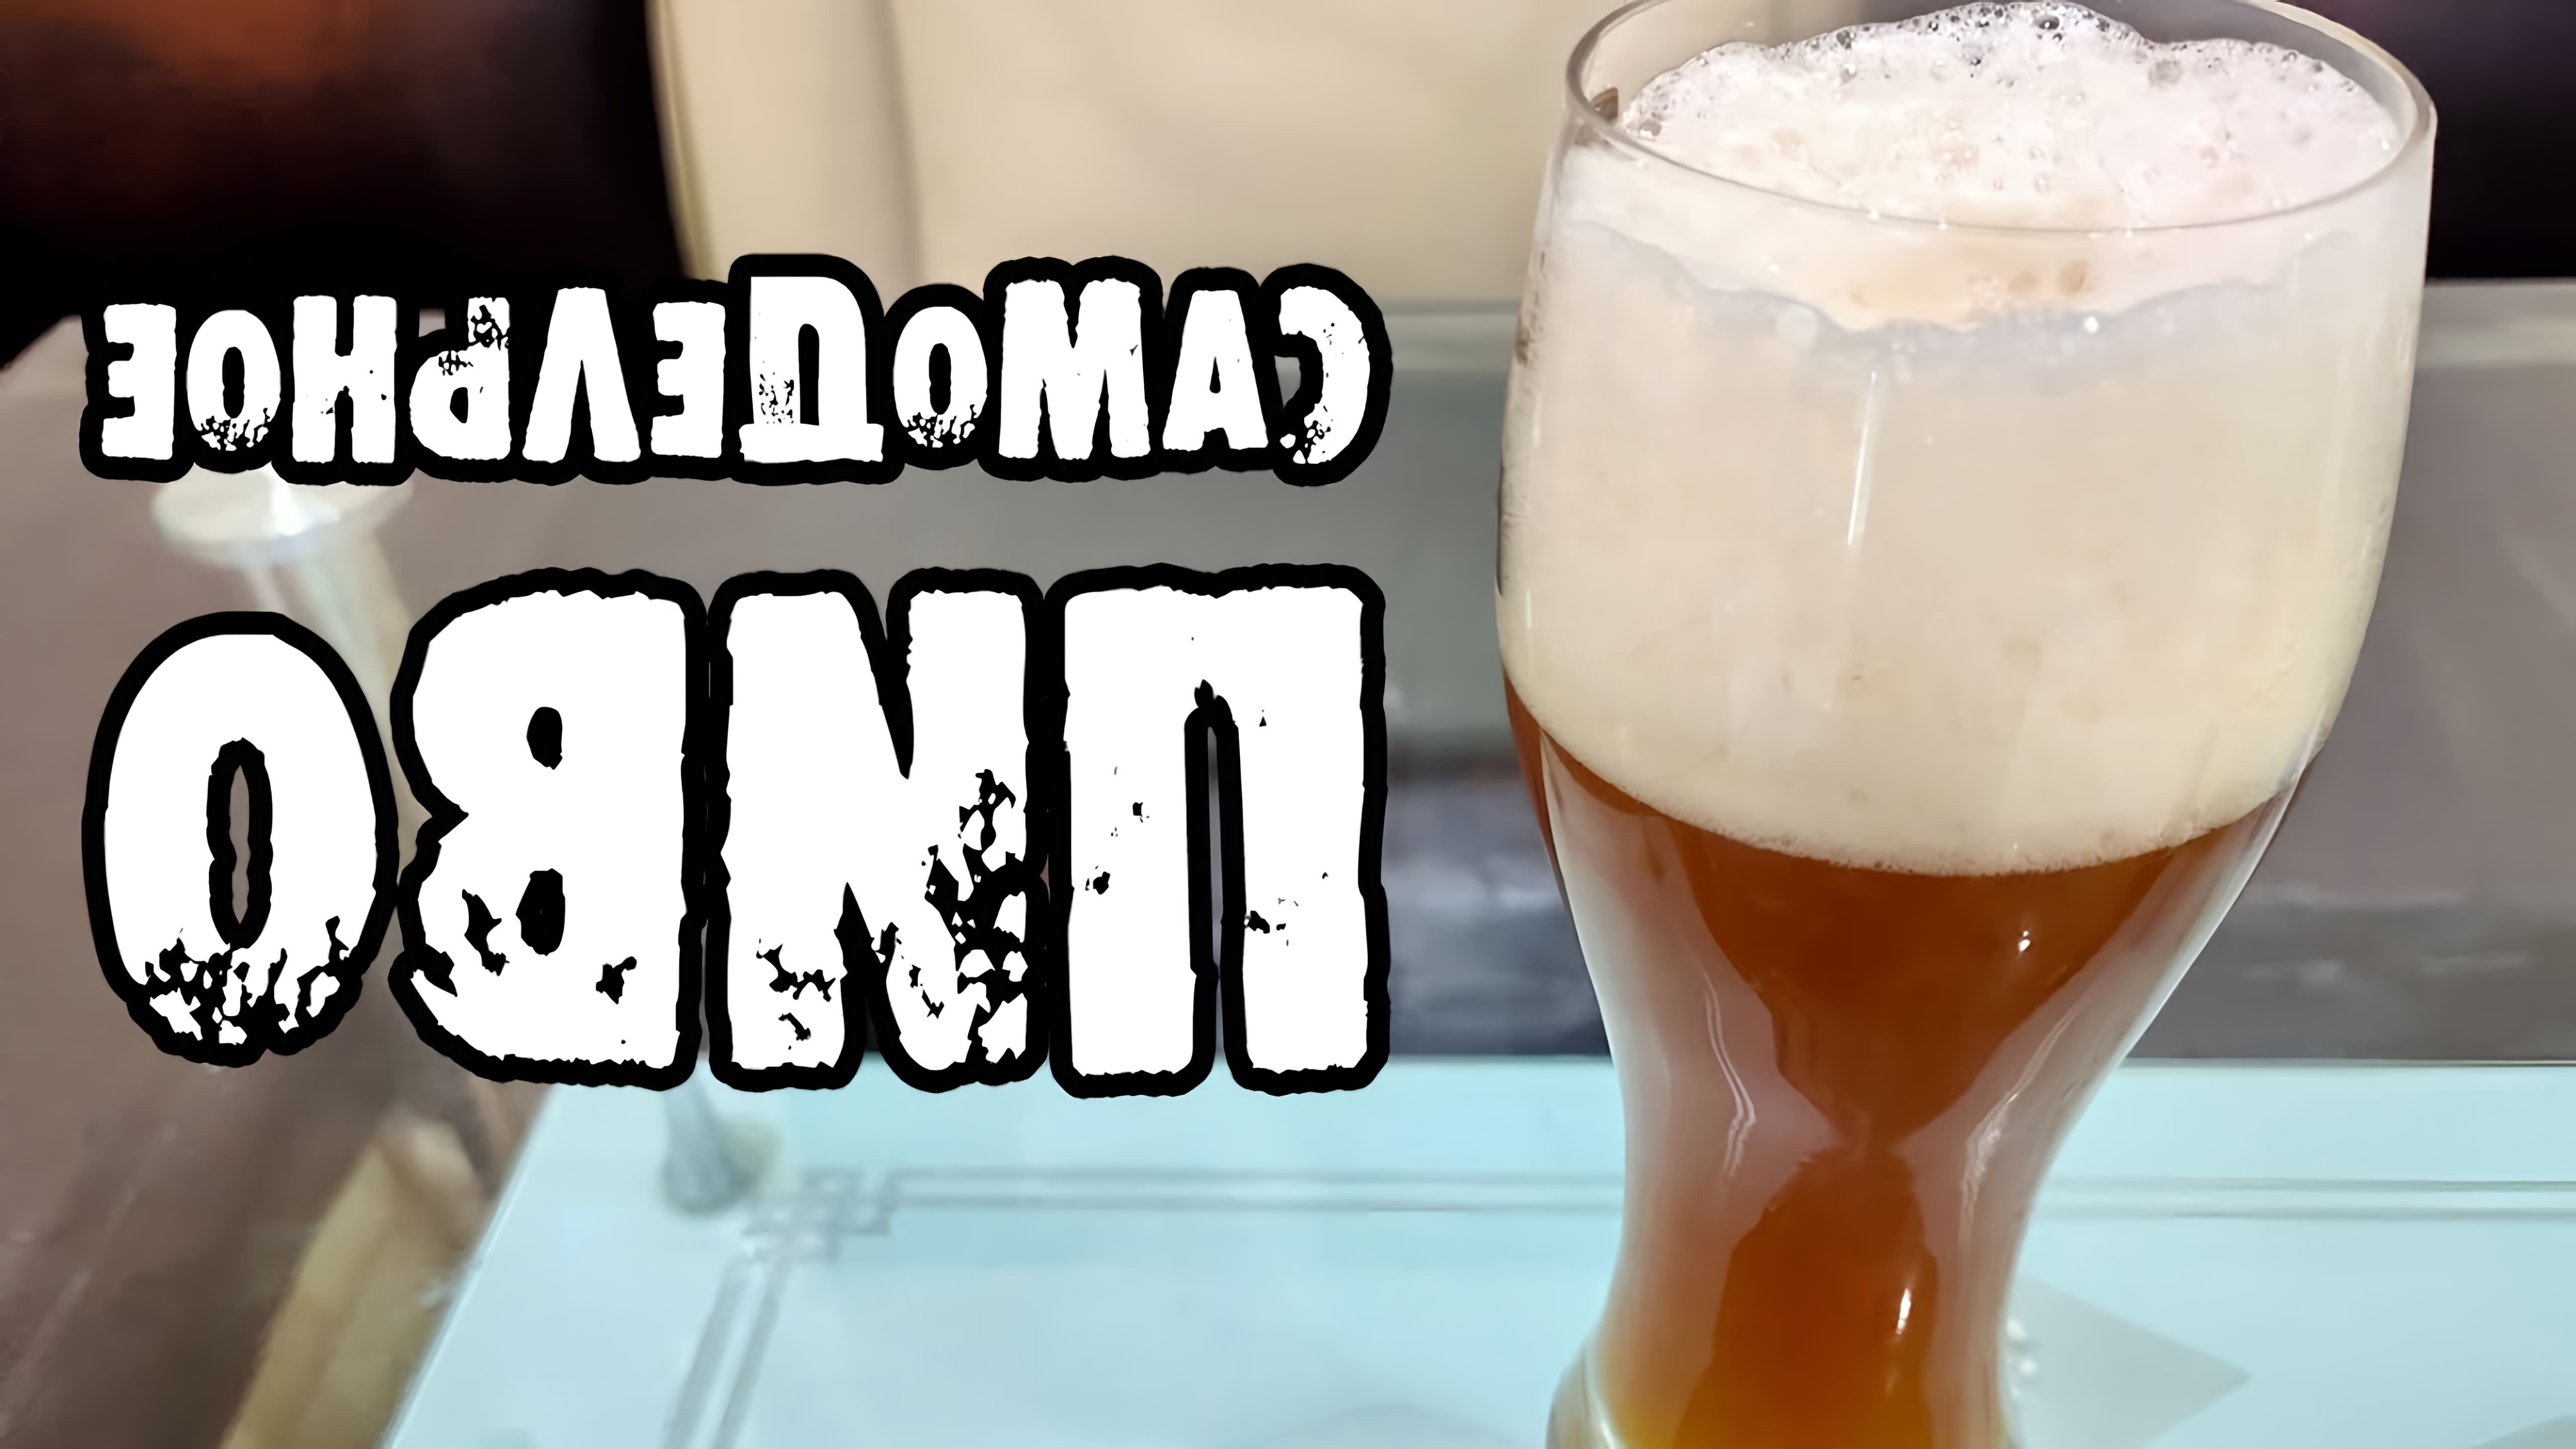 В данном видео рассказывается о том, как сварить крафтовое пиво в домашних условиях